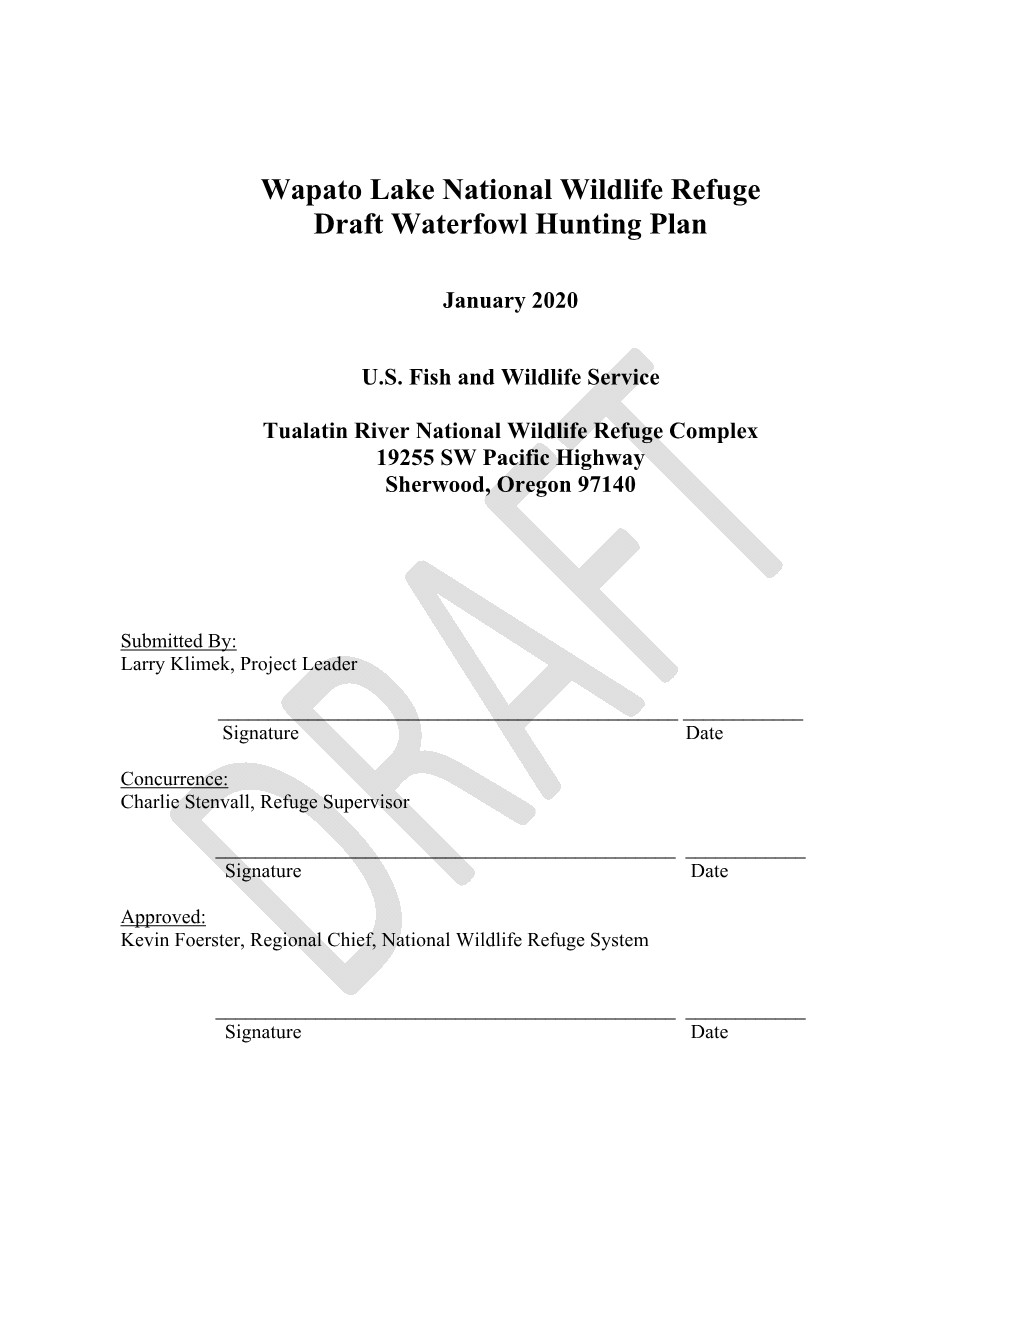 Wapato Lake National Wildlife Refuge Draft Waterfowl Hunting Plan